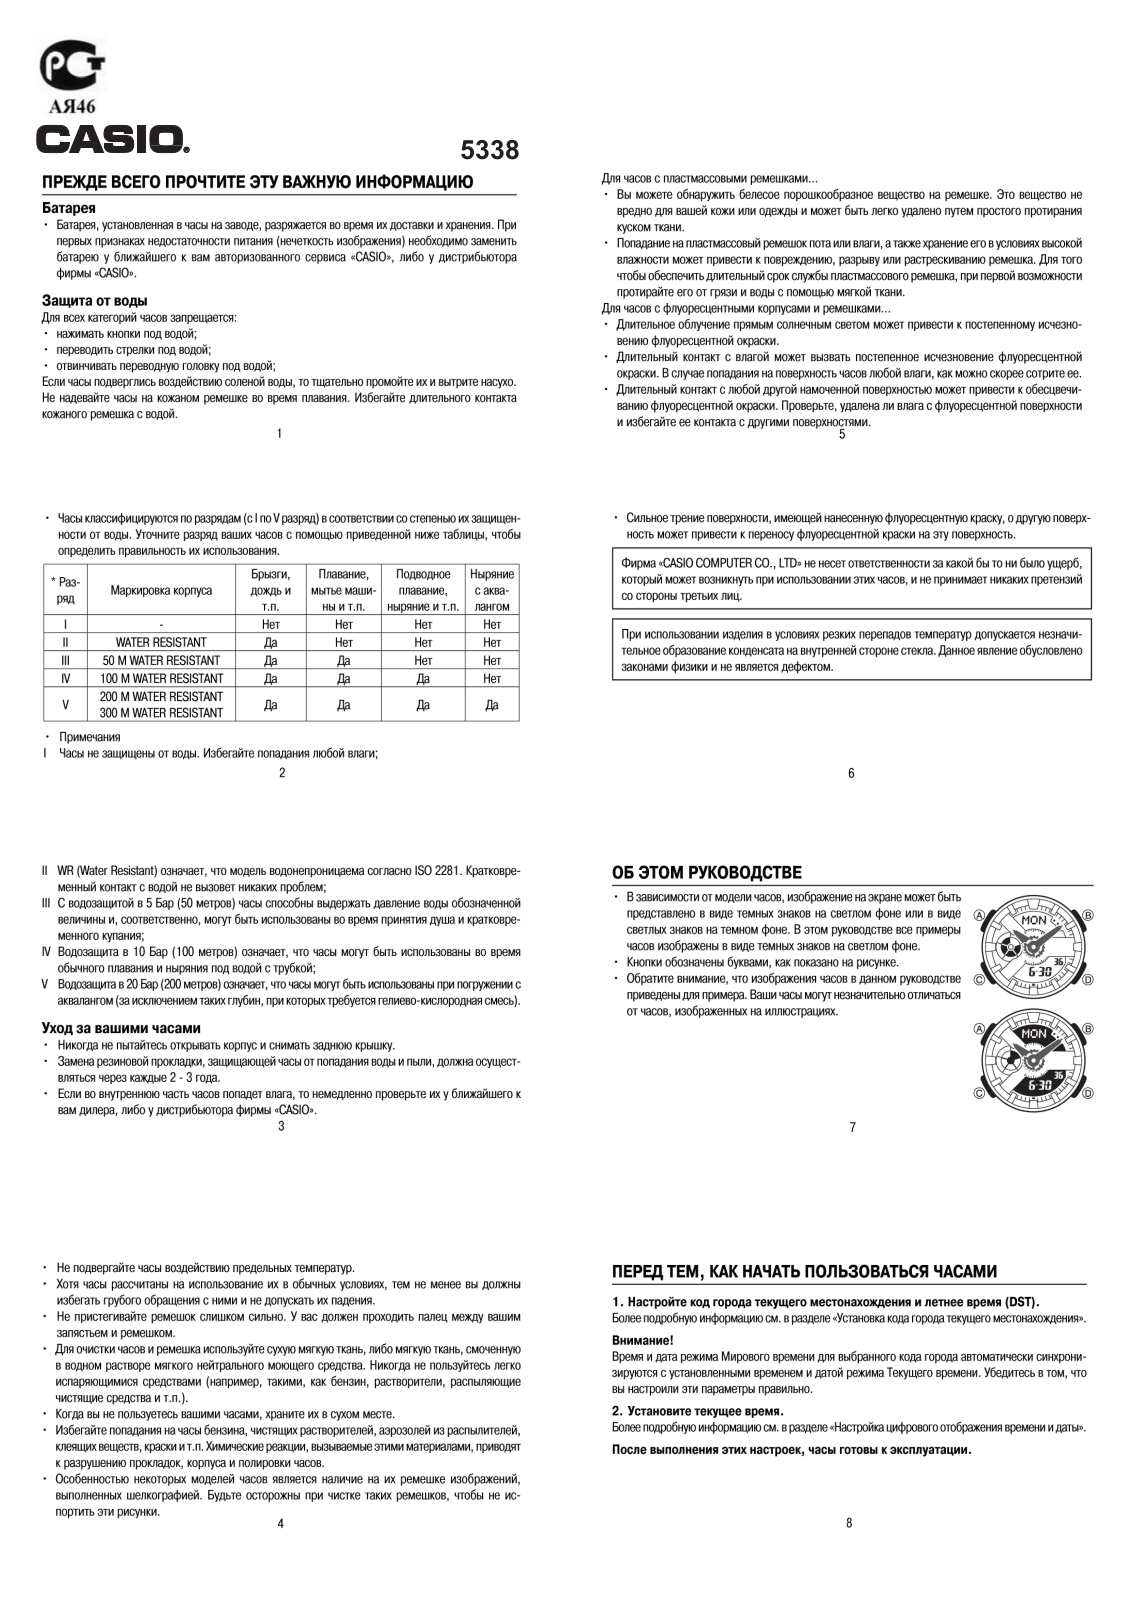 Casio BA-110LP-4A User Manual